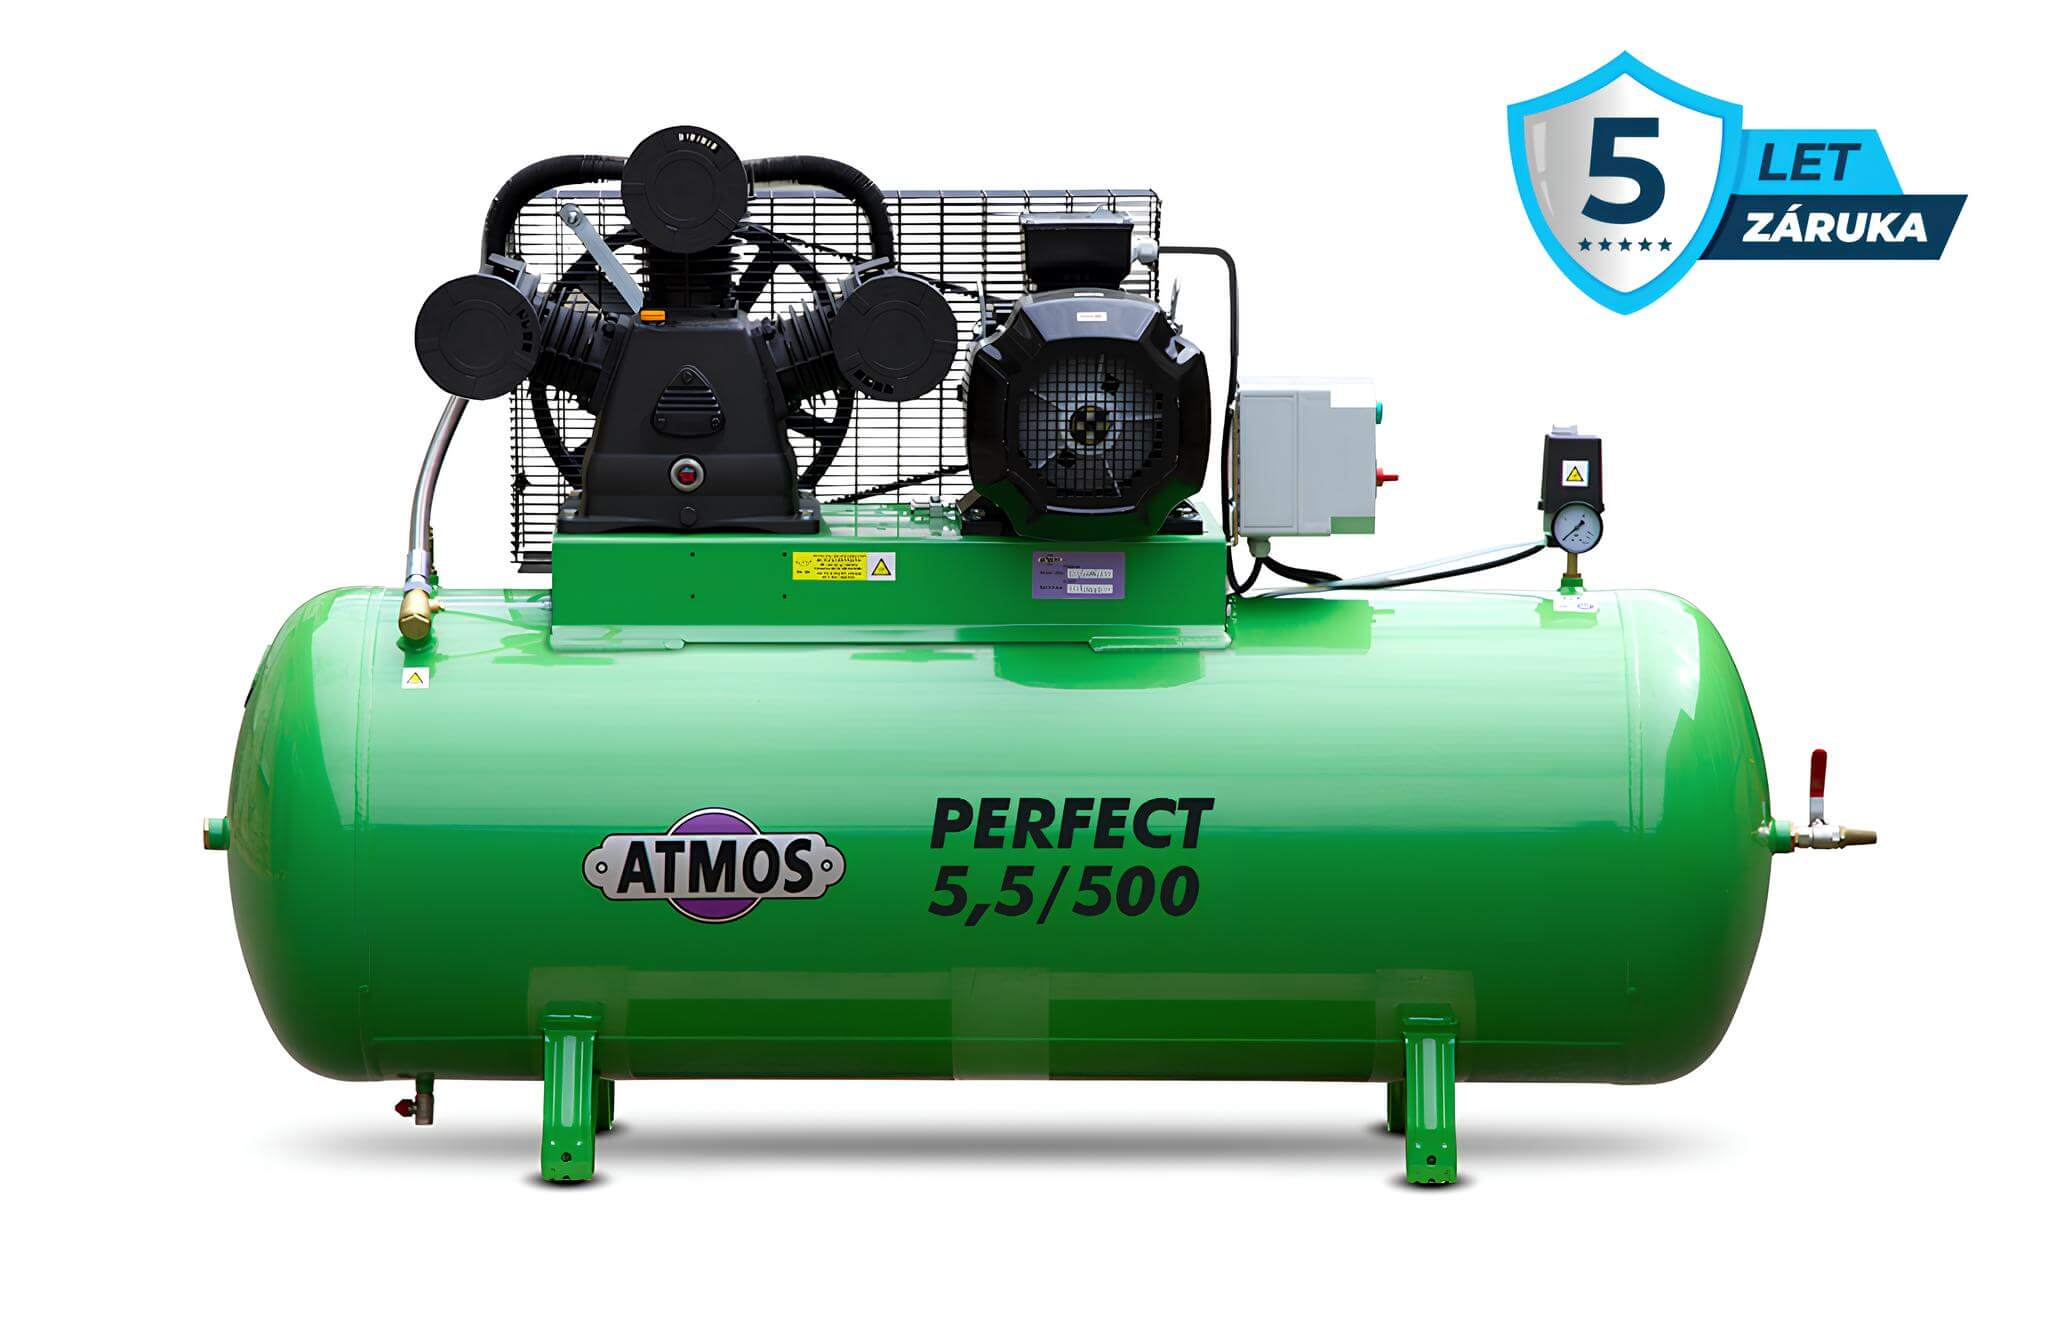 Atmos Pístový kompresor Perfect - 5,5/500 příkon 5,5 kW, výkon 750 l/min, tlak 10 bar, vzdušník 500 l, napětí 400/50 V/Hz